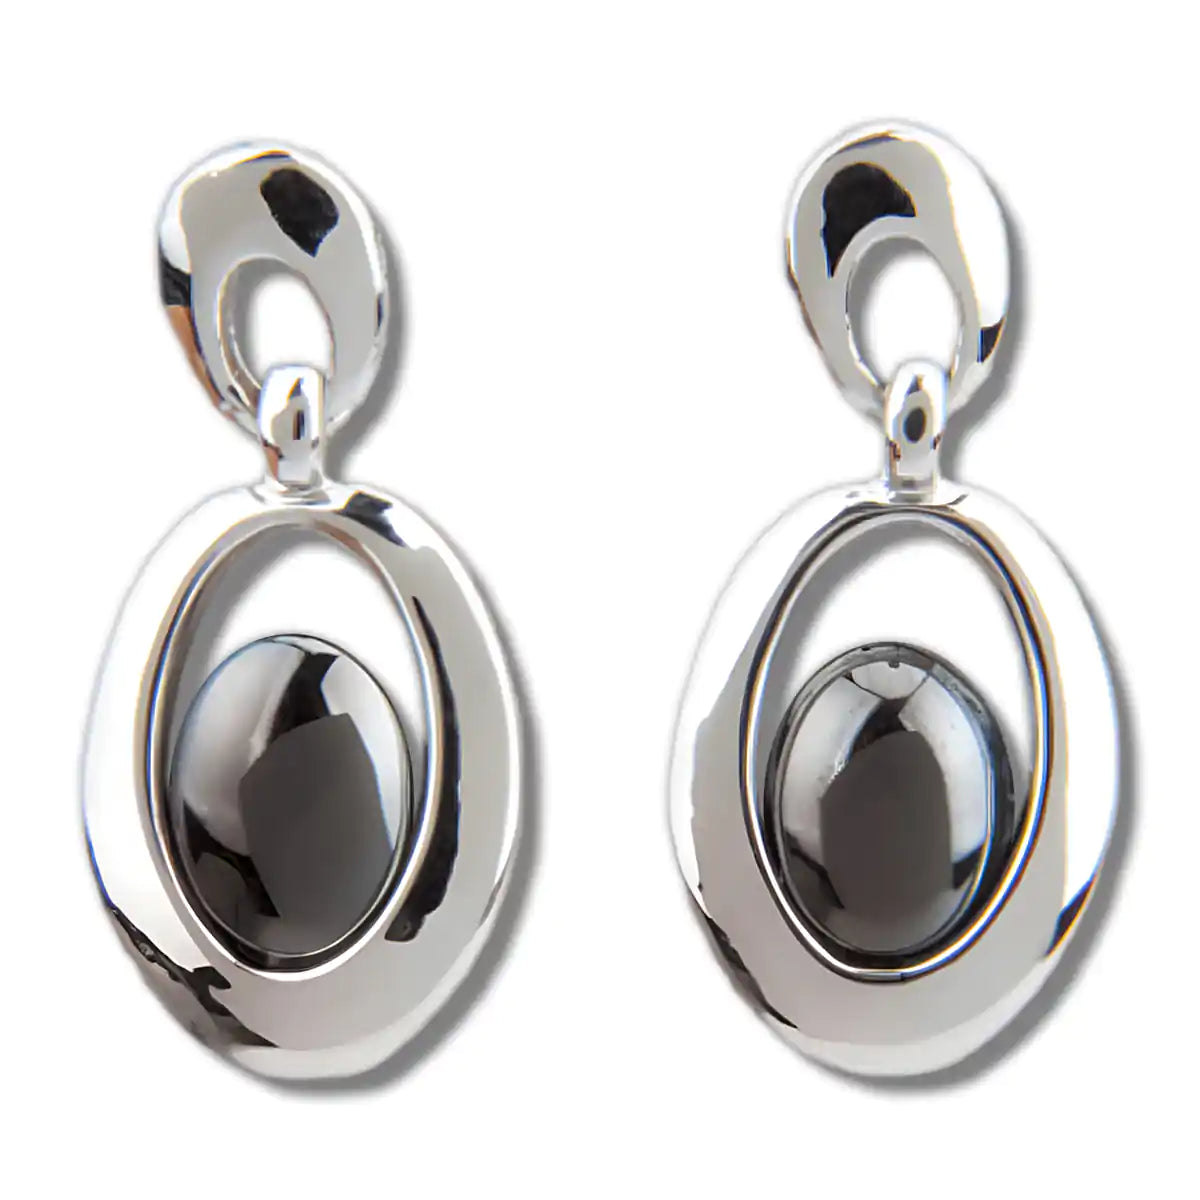 Hematite clarity earrings